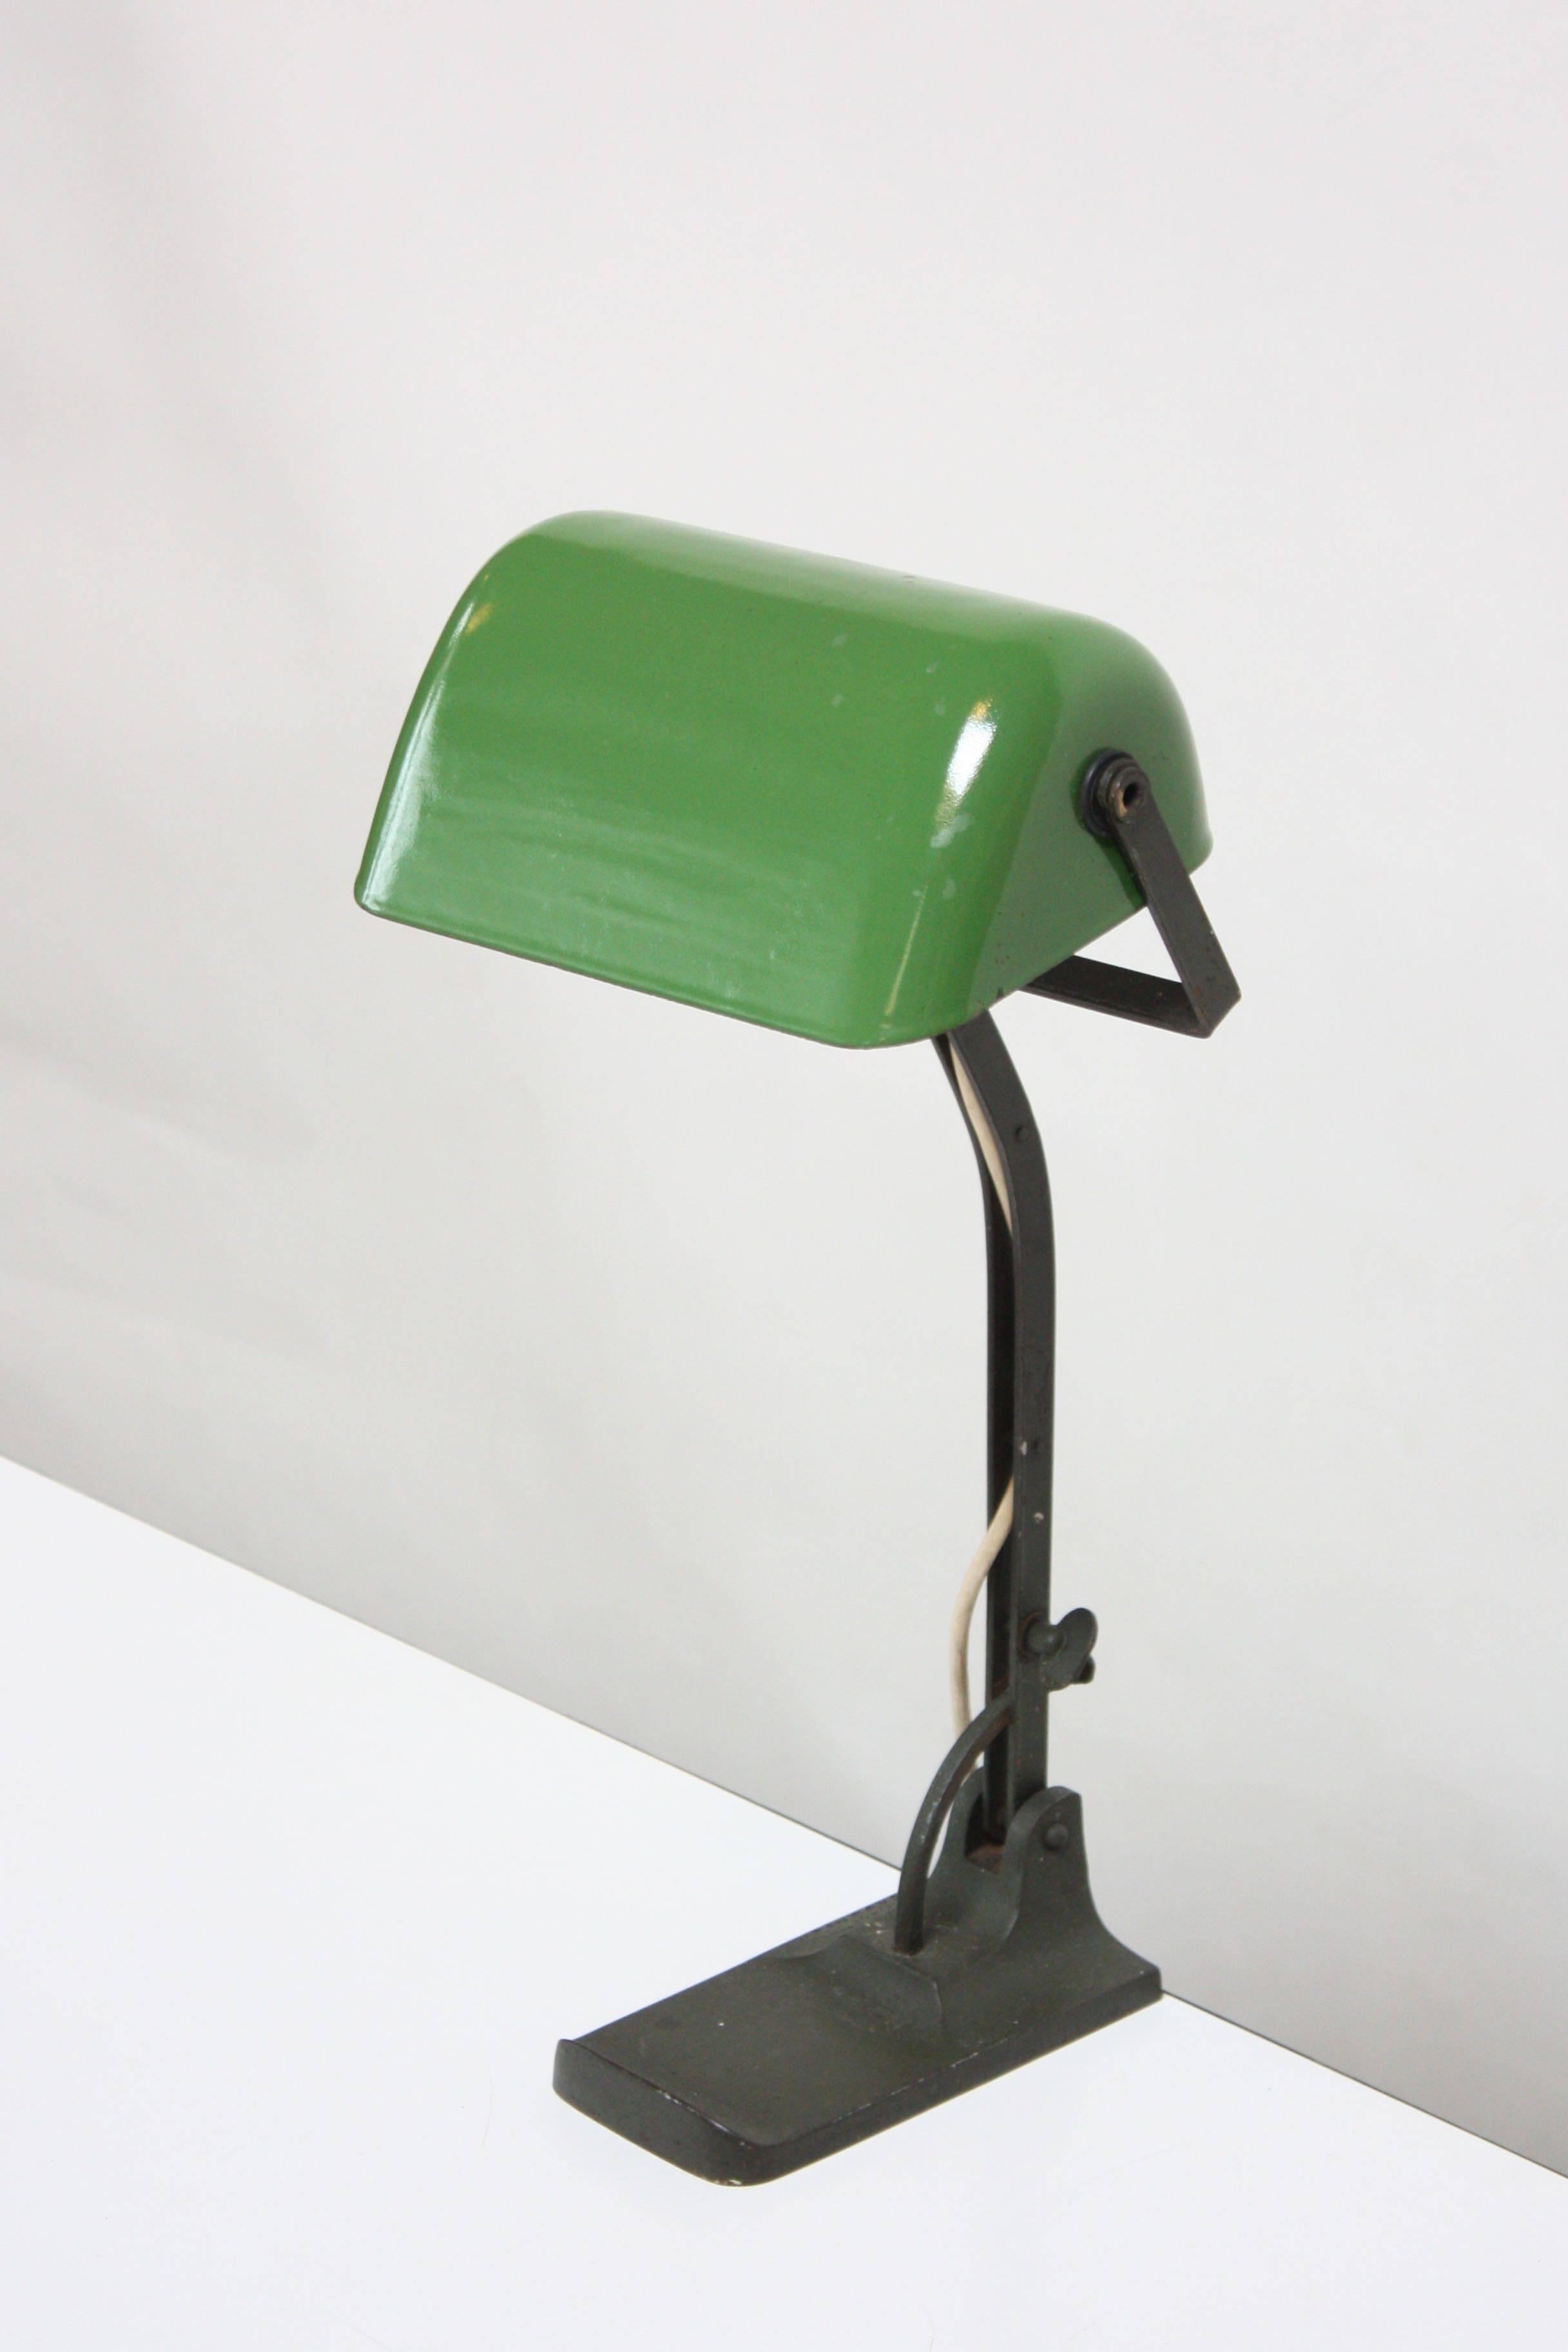 Verstellbare Werkstatt-/Bankierlampe von Astral (Österreich, ca. Ende der 1930er - Anfang der 1940er Jahre) mit gegossenem Metallsockel/-stiel und grün emailliertem Metallschirm Schirm und Stiel sind verstellbar (die Höhe kann nur wie abgebildet